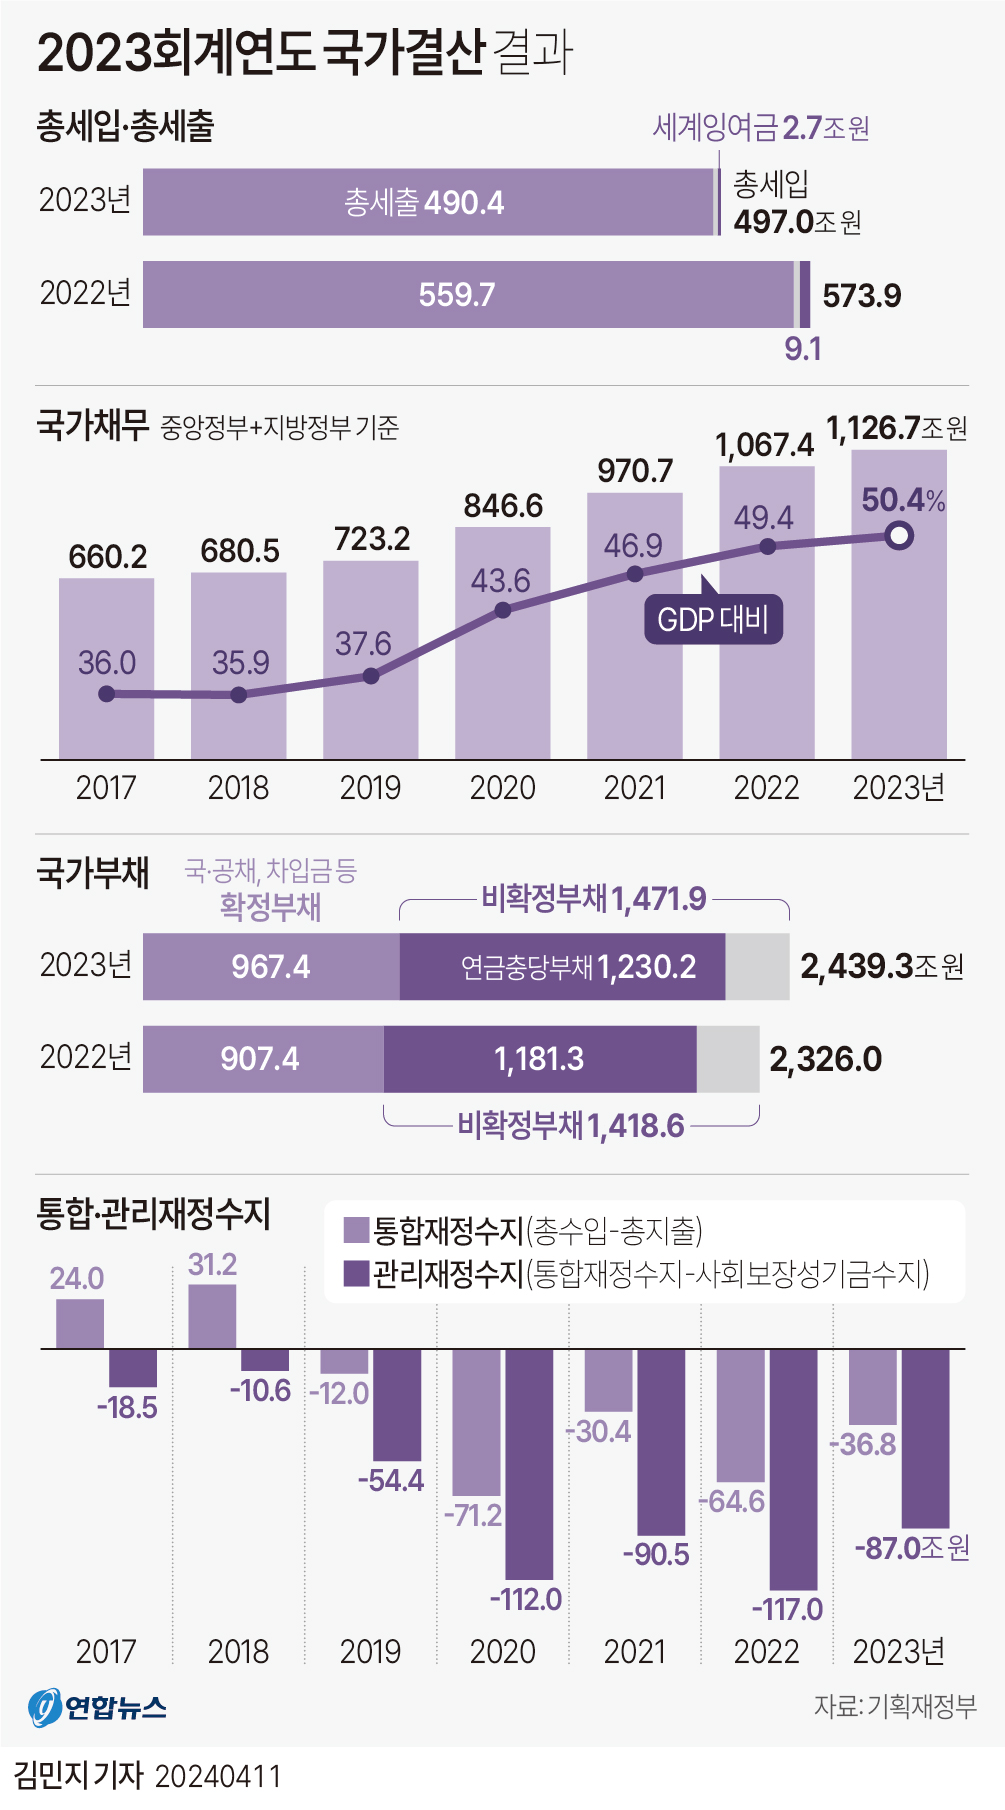 [그래픽] 2023회계연도 국가결산 결과